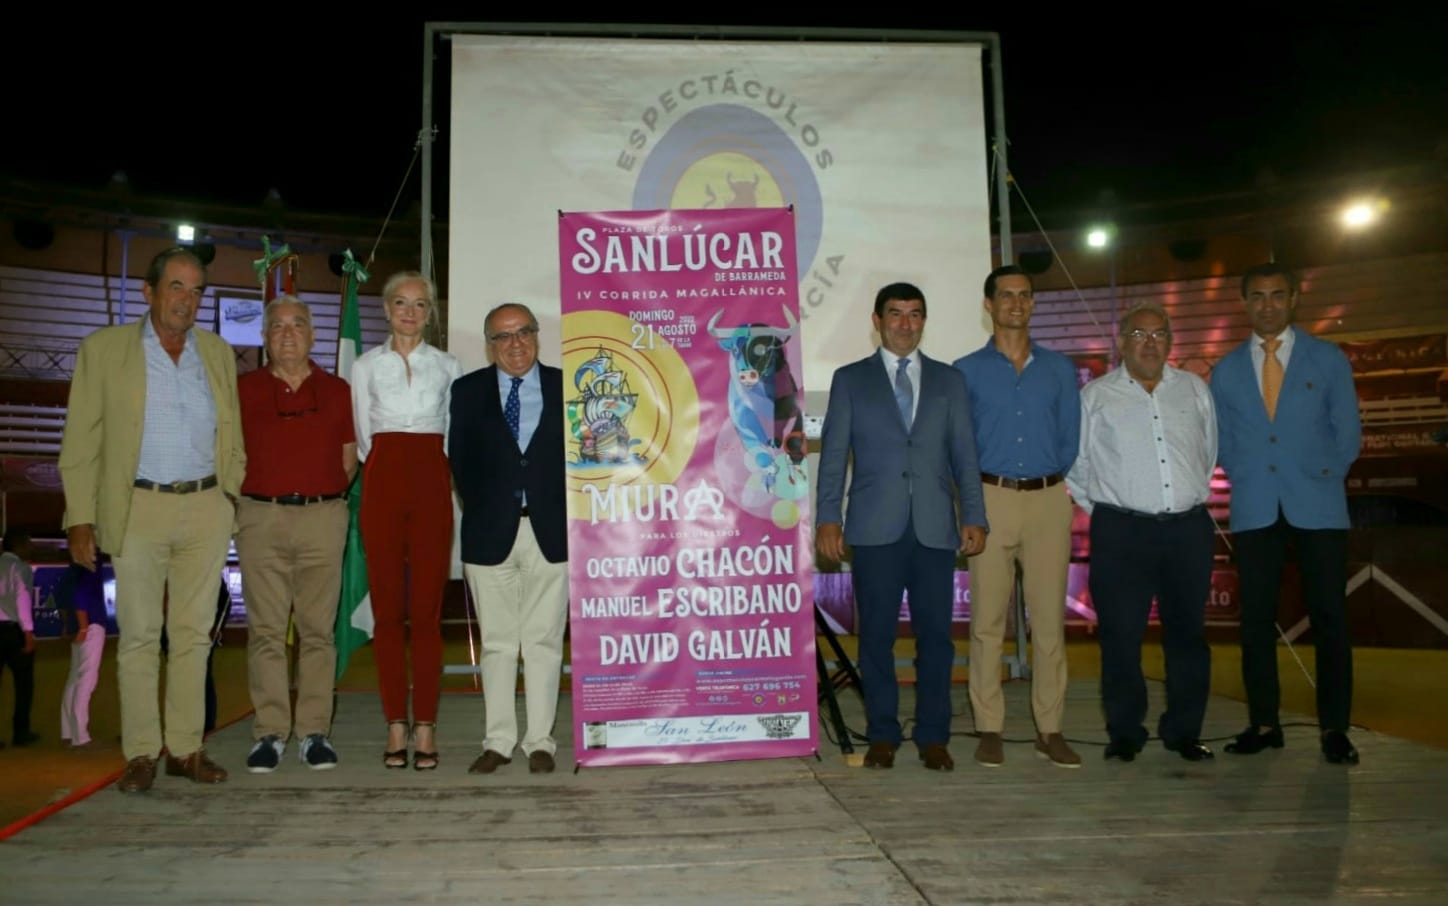 España: Chacón, Escribano y Galván el 21 de agosto en Sanlúcar de Barrameda